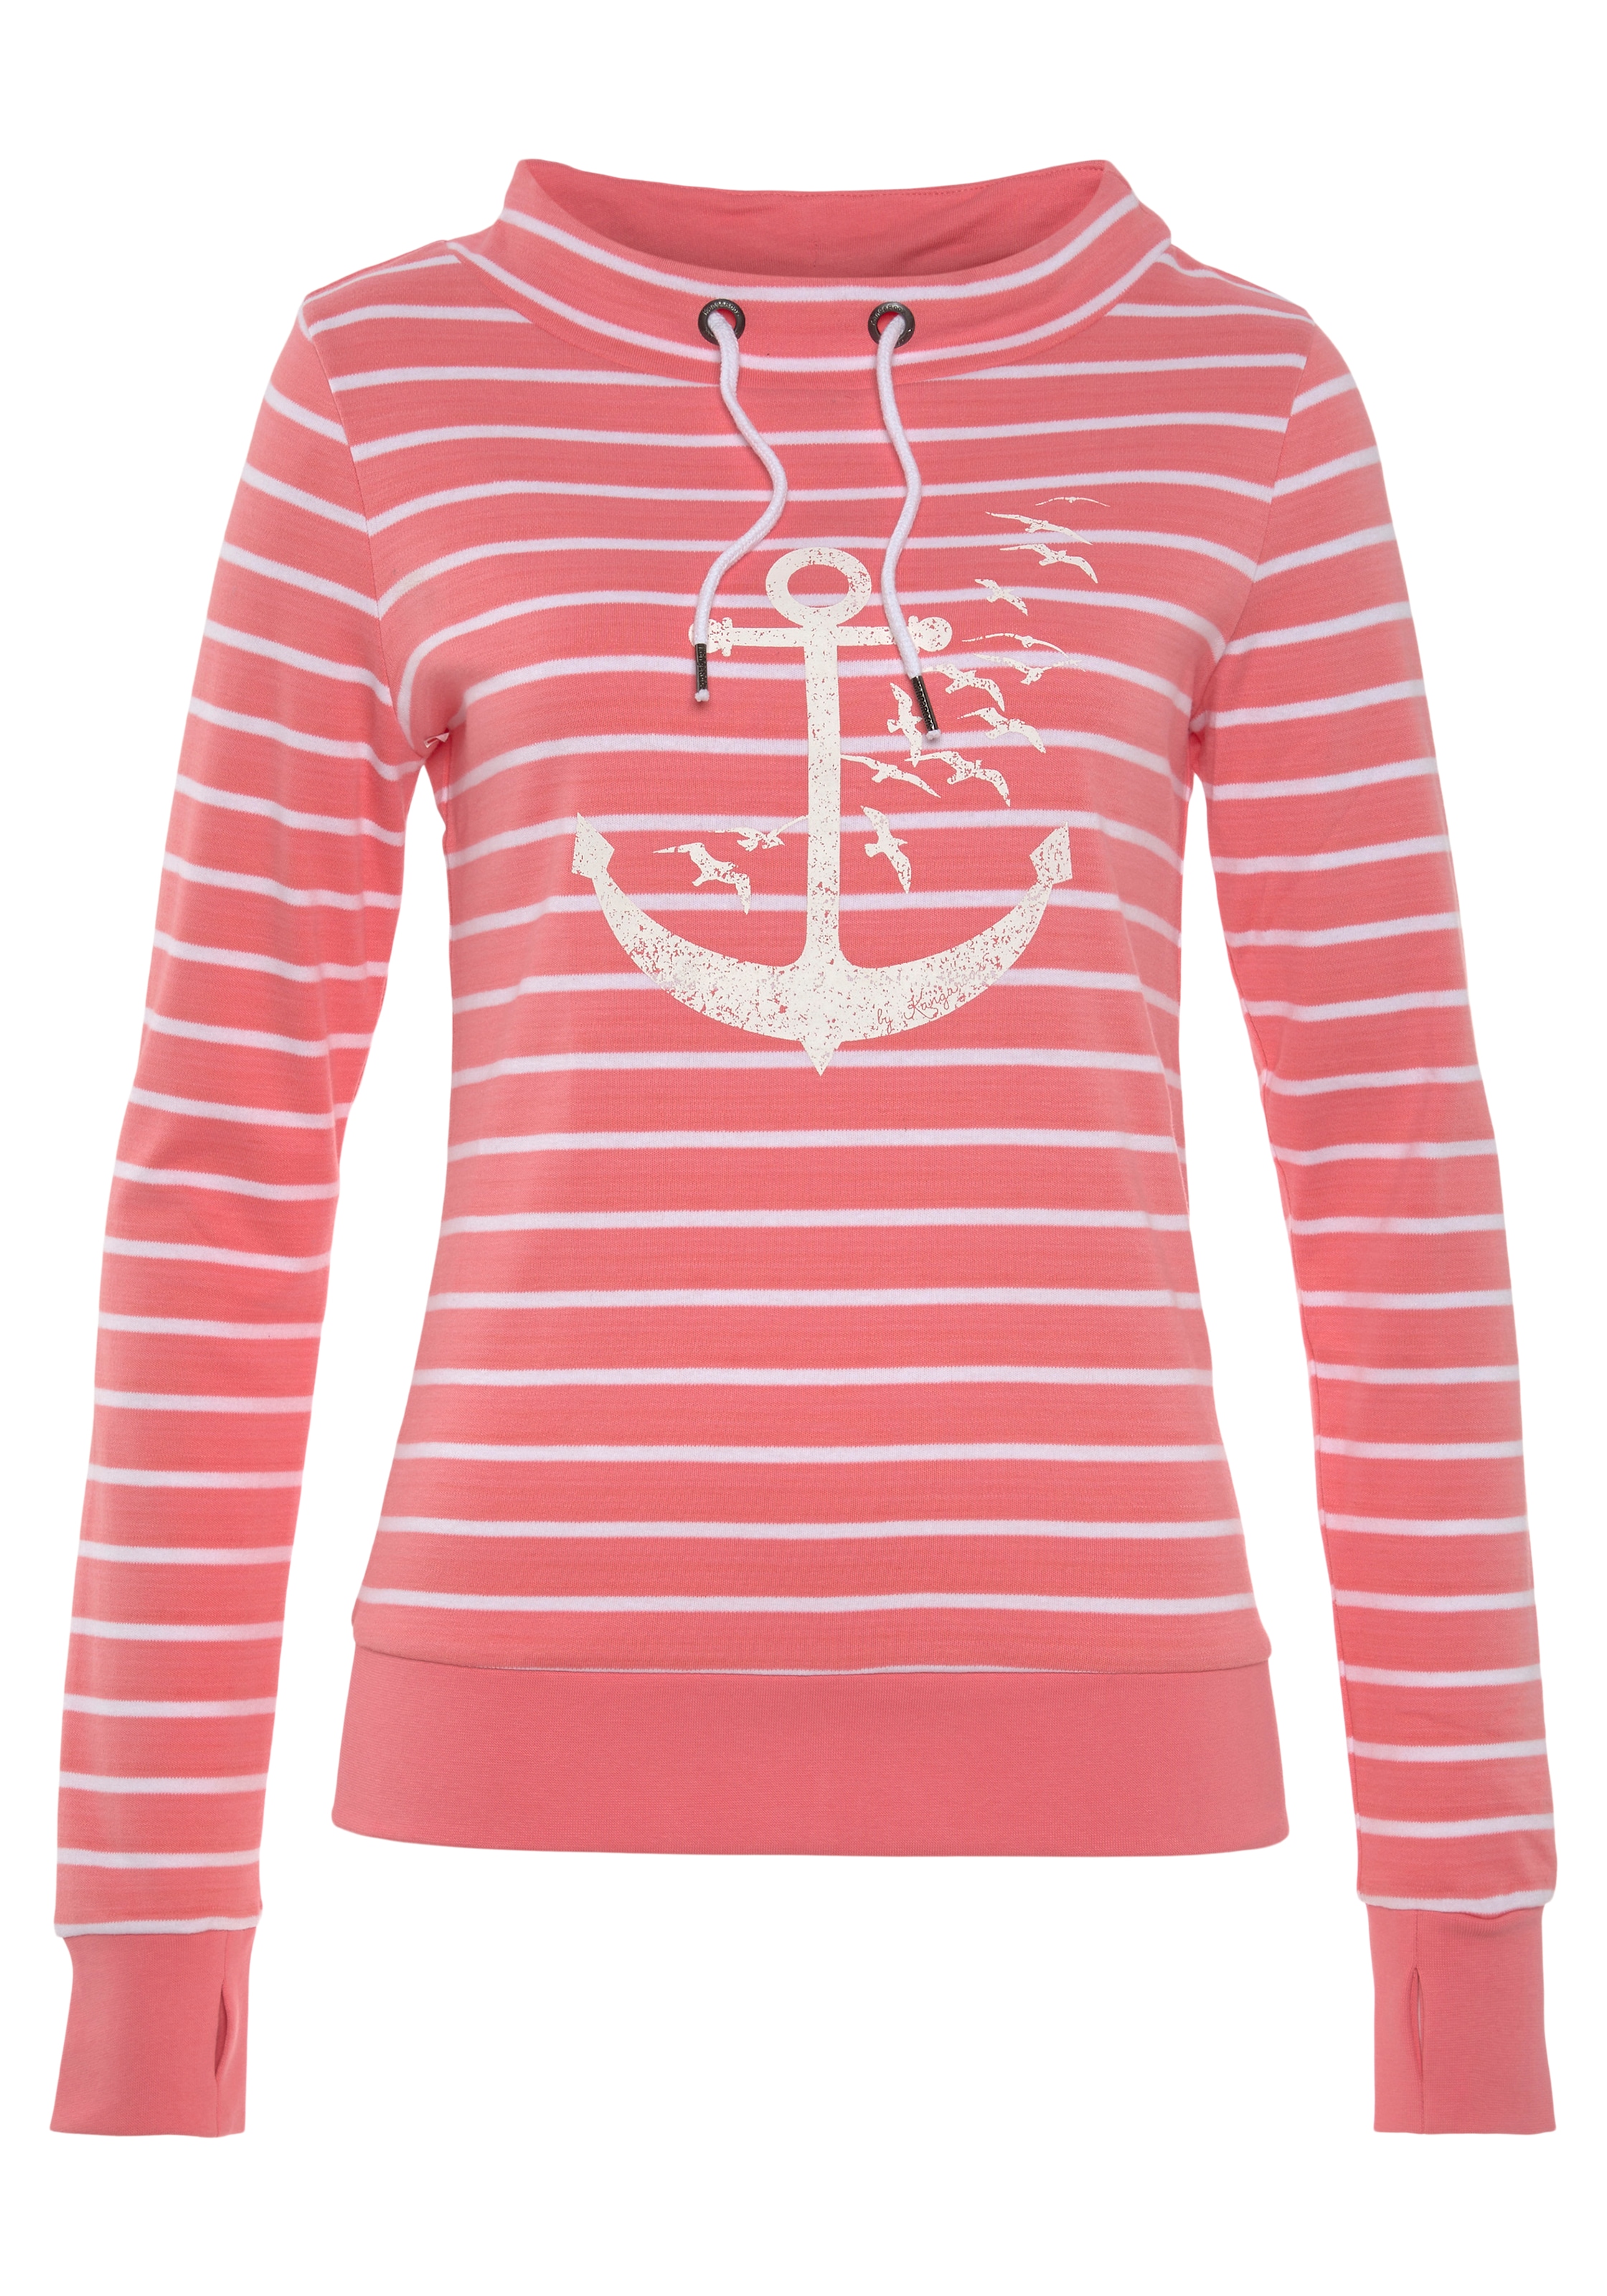 KangaROOS Sweatshirt, mit maritimen Stehkragen Druck shoppen sportlichem und